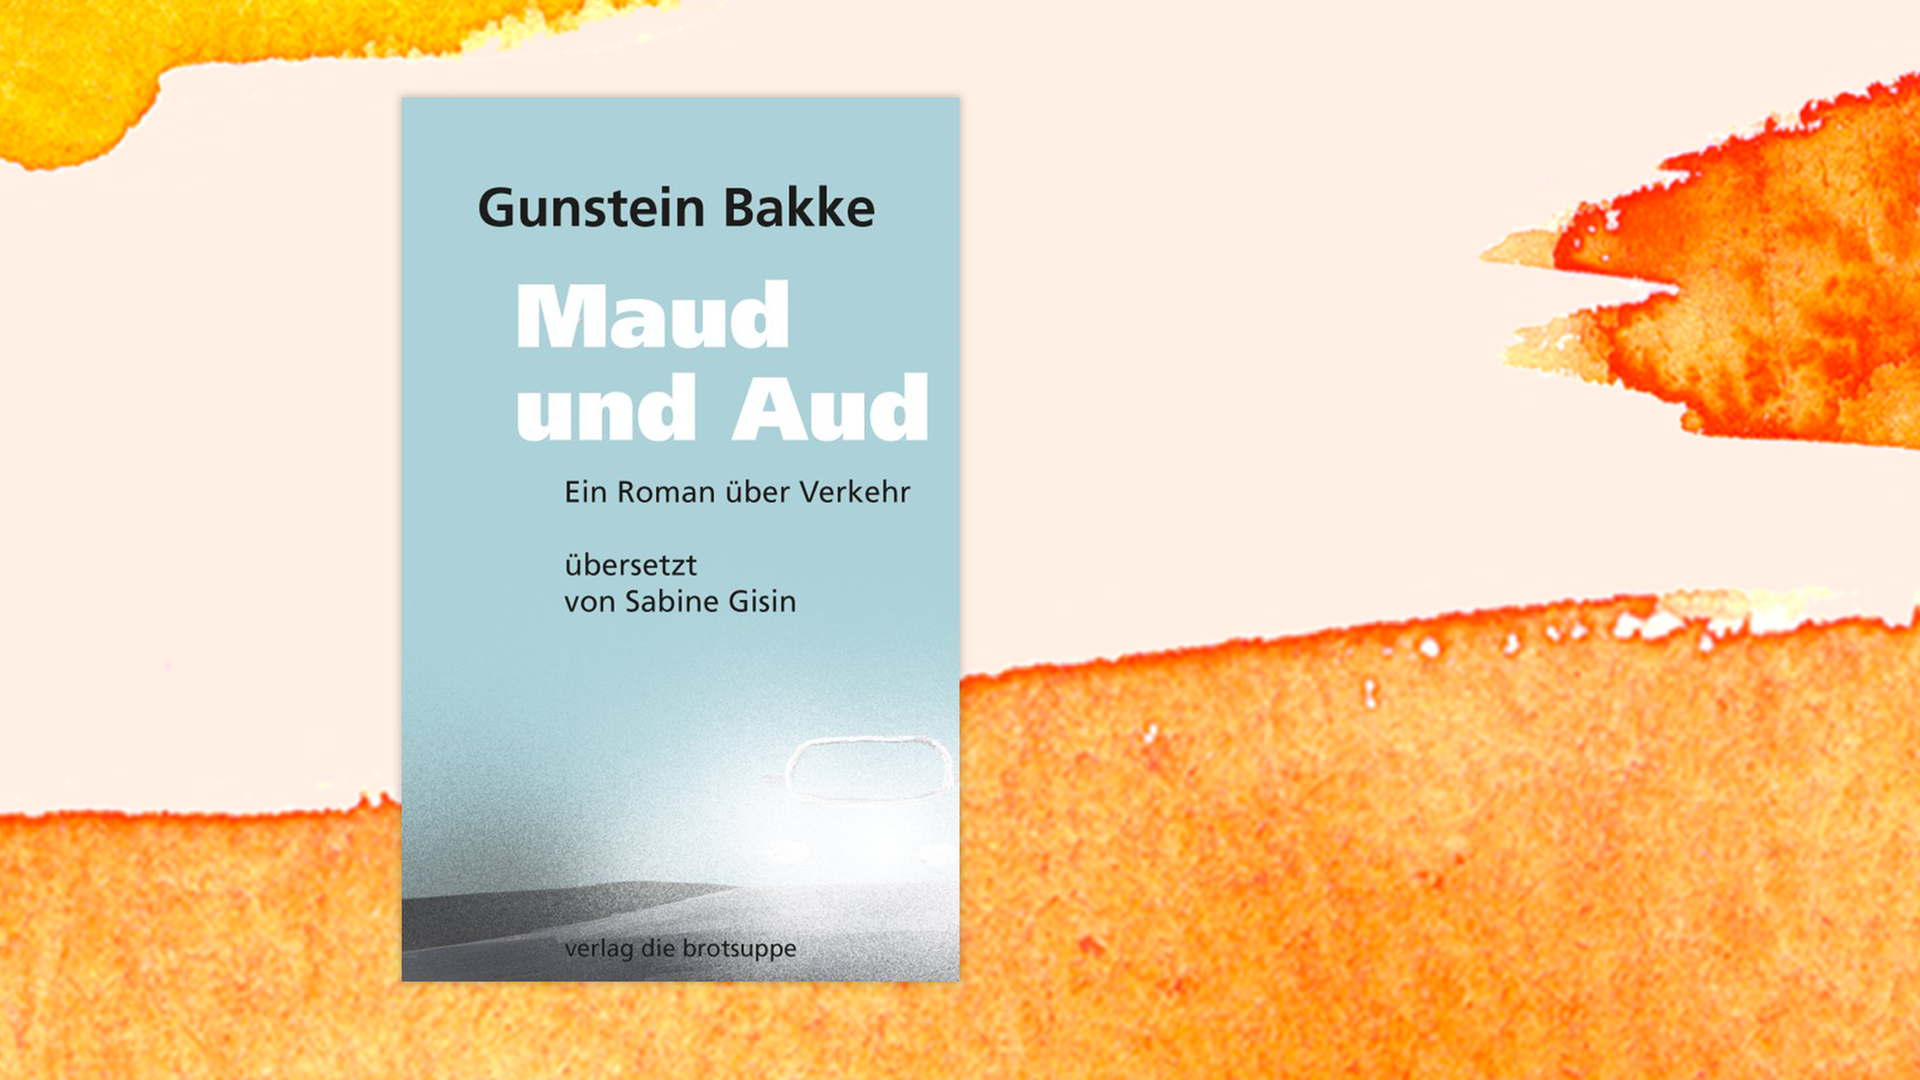 Zu sehen ist das Cover des Buches "Maud und Aud" von Gunstein Bakke.